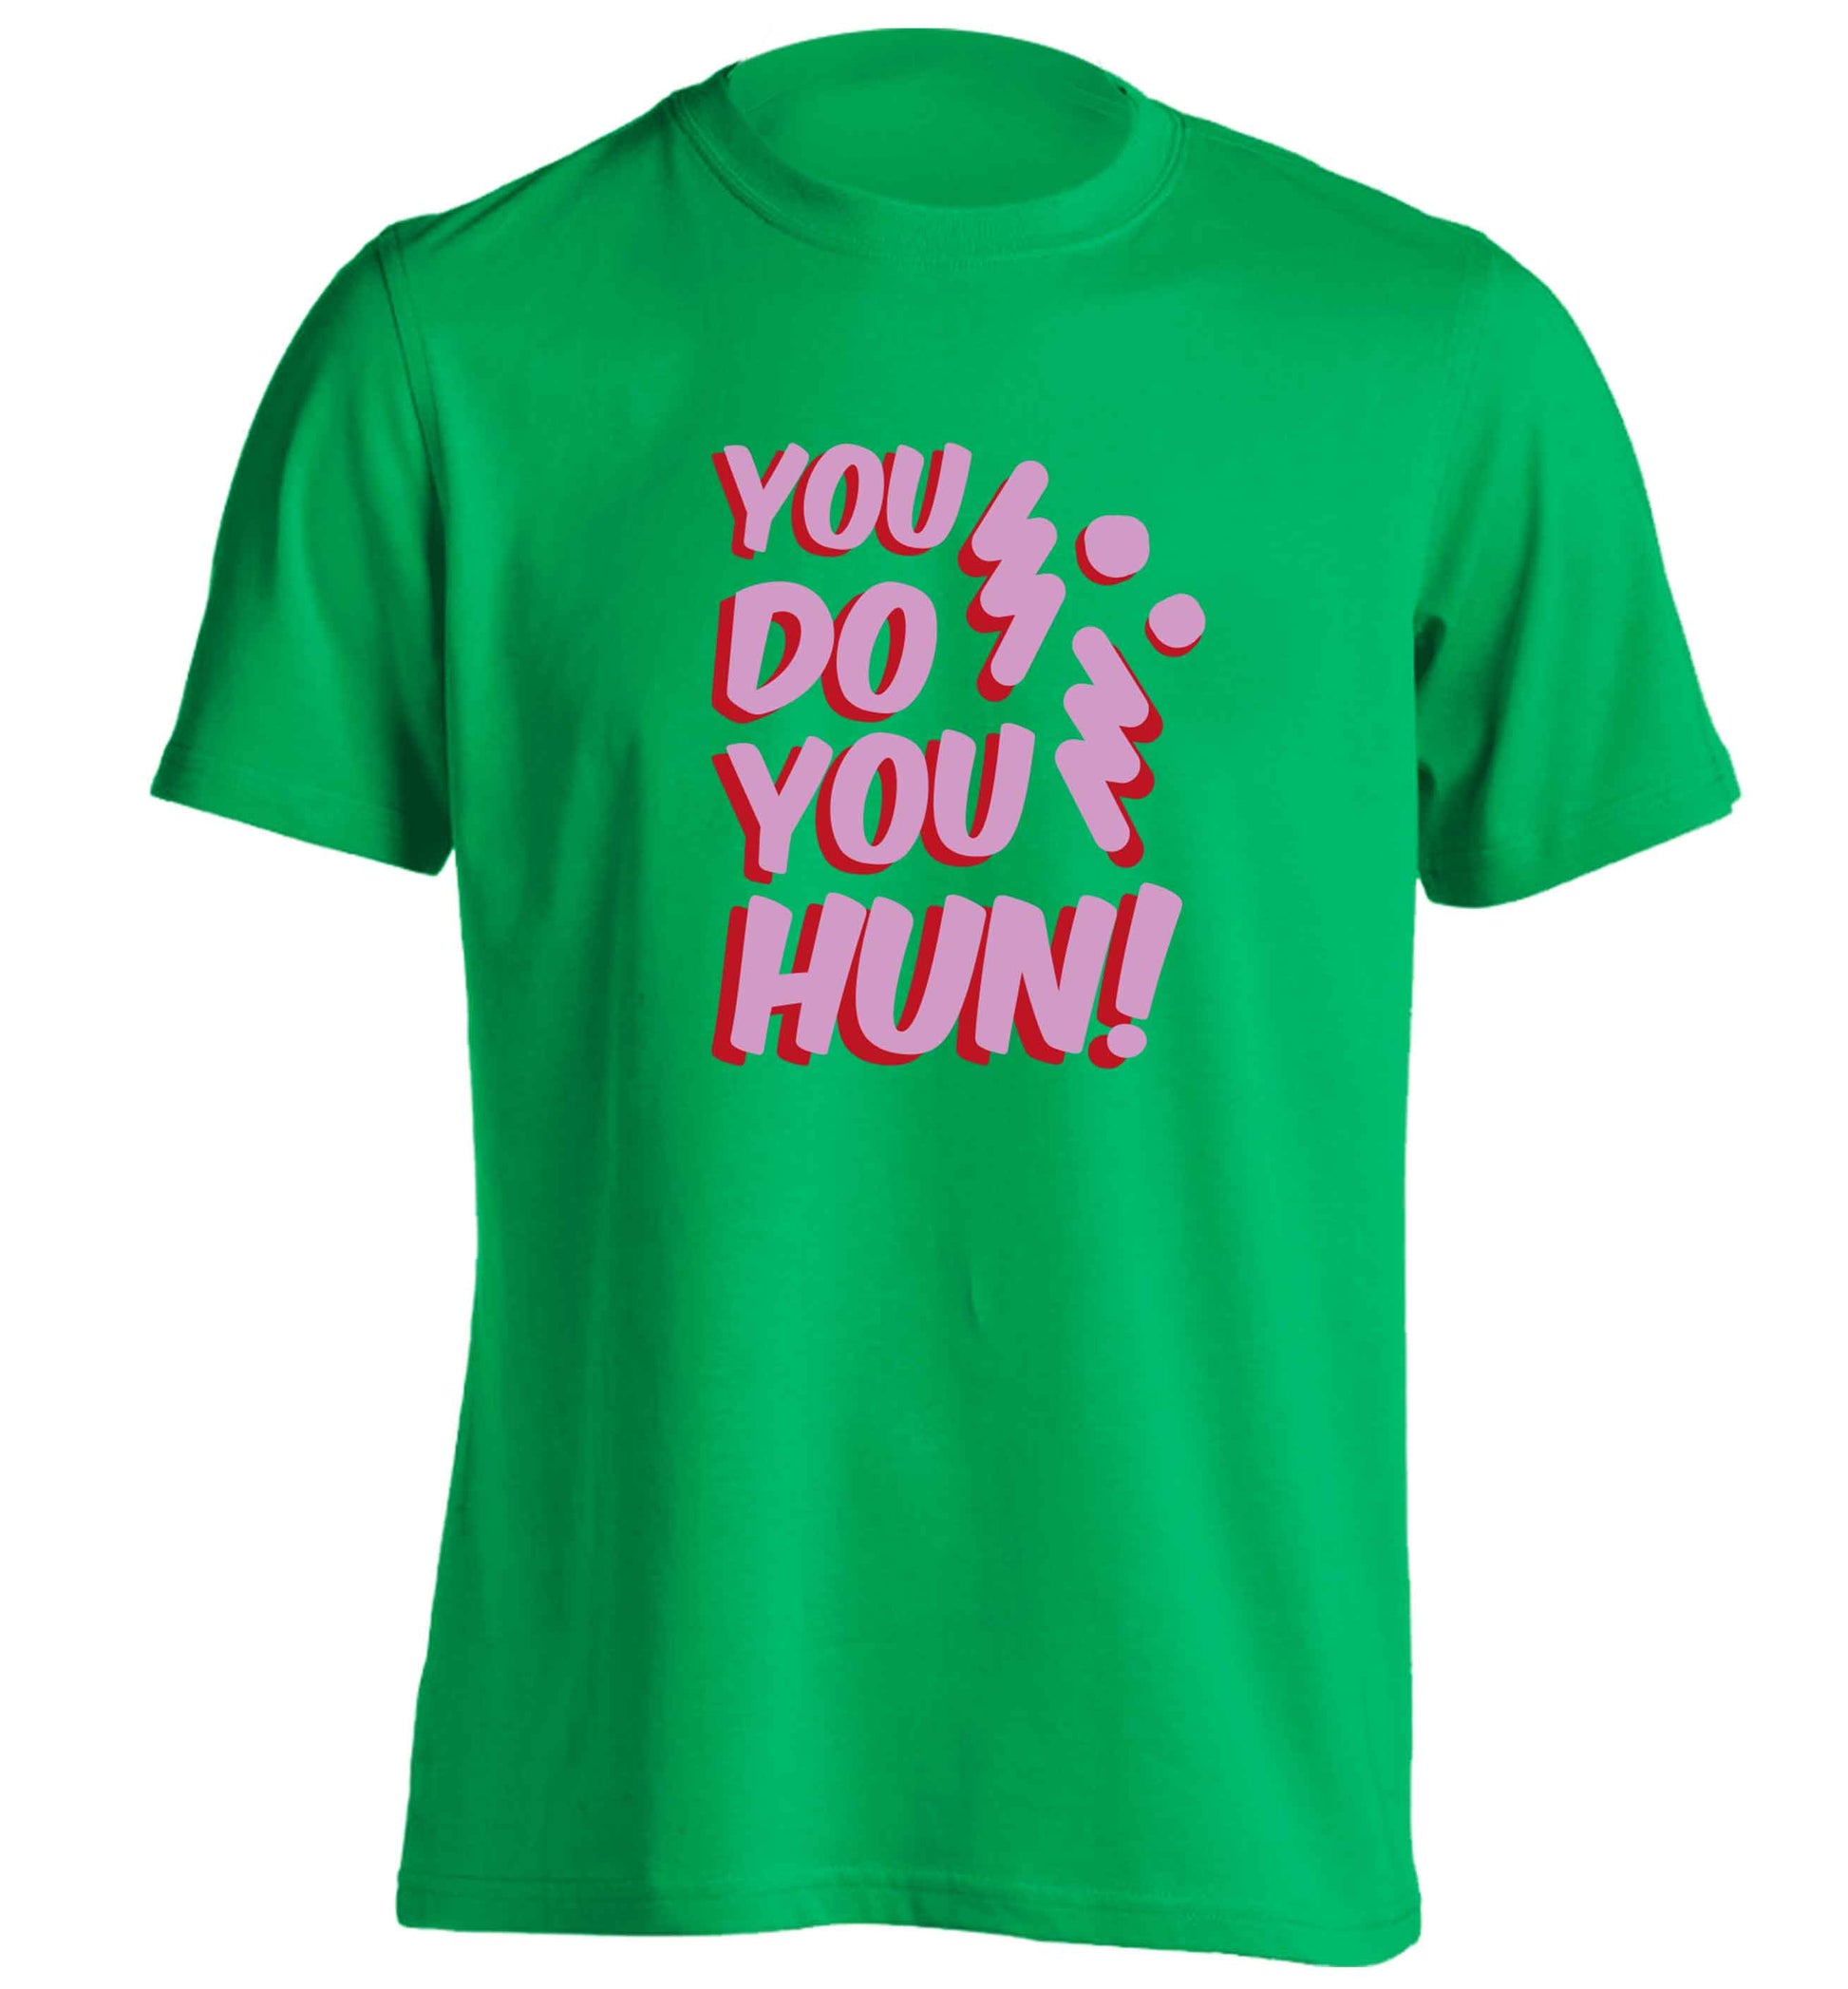 You do you hun adults unisex green Tshirt 2XL